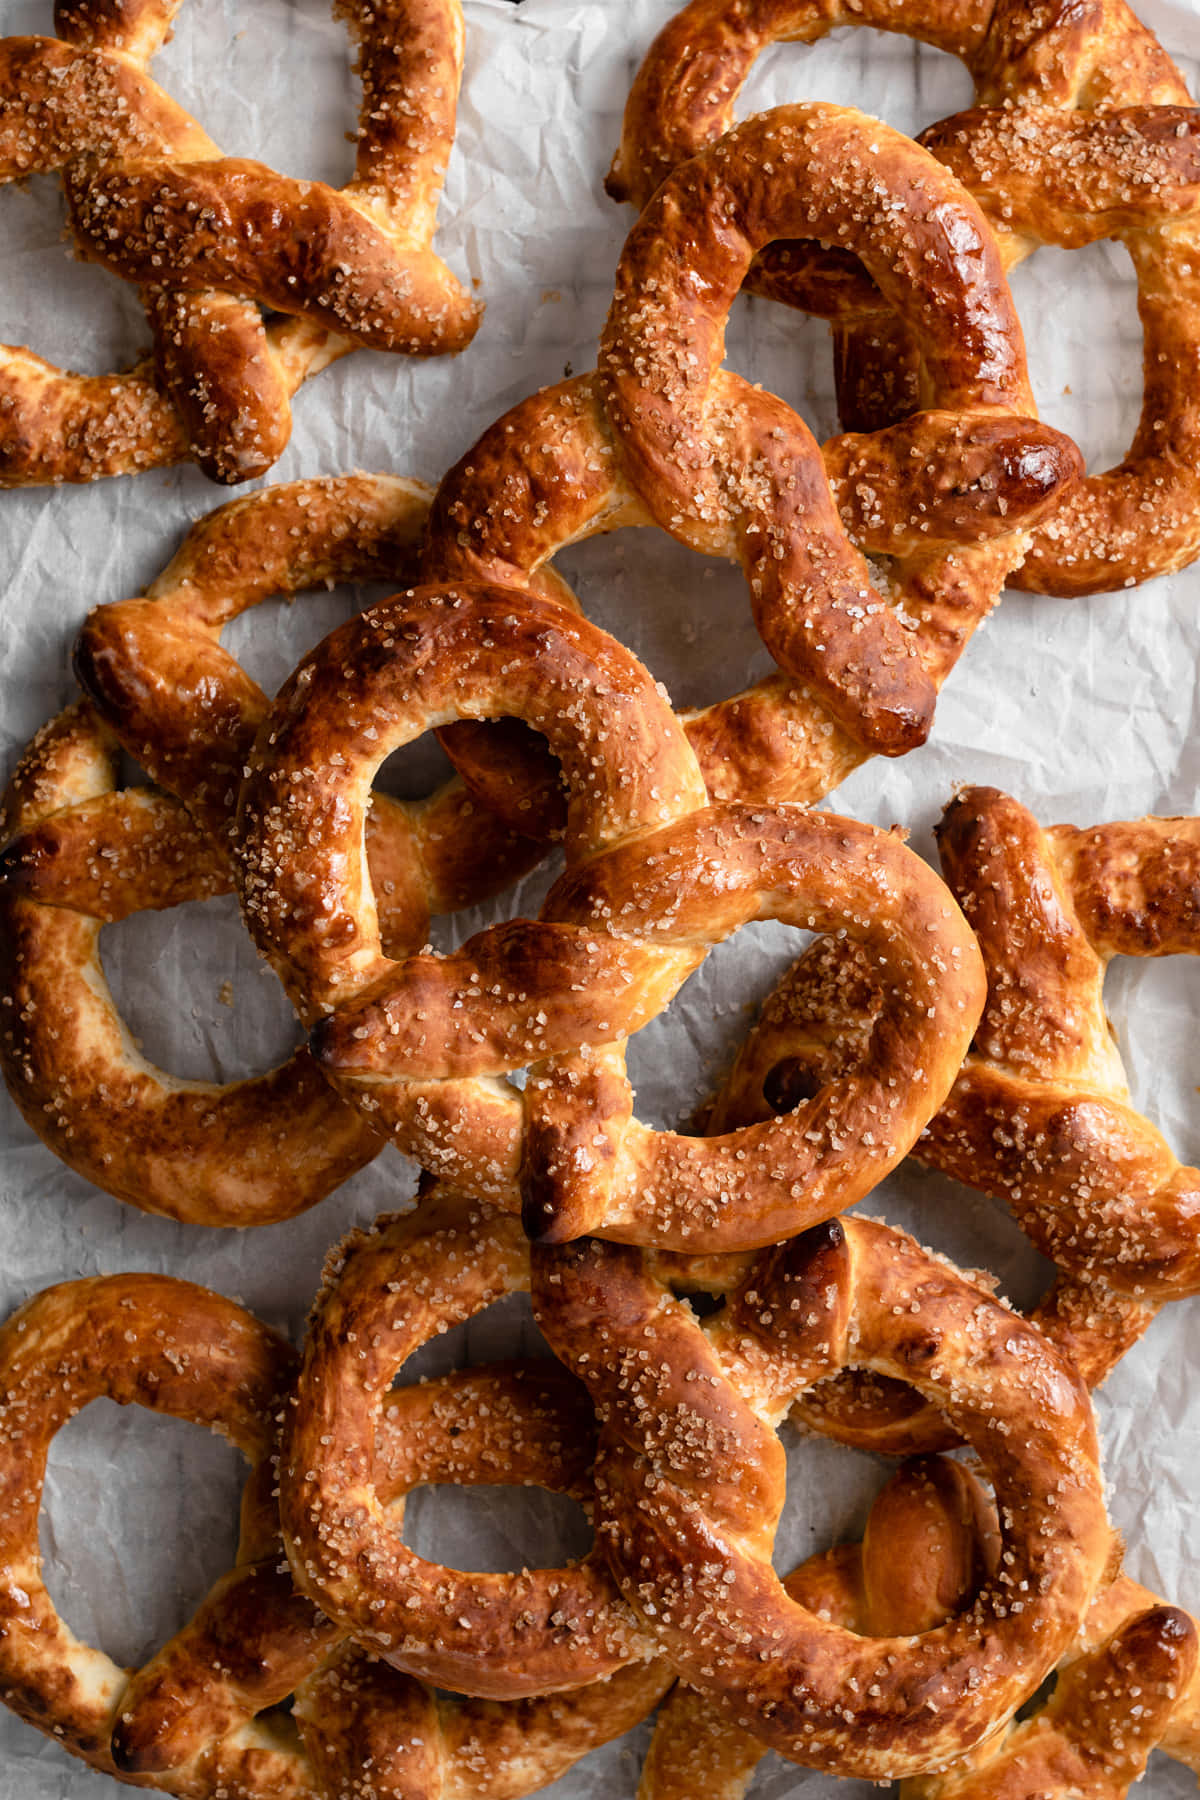 Enjoy a tasty pretzel snack.